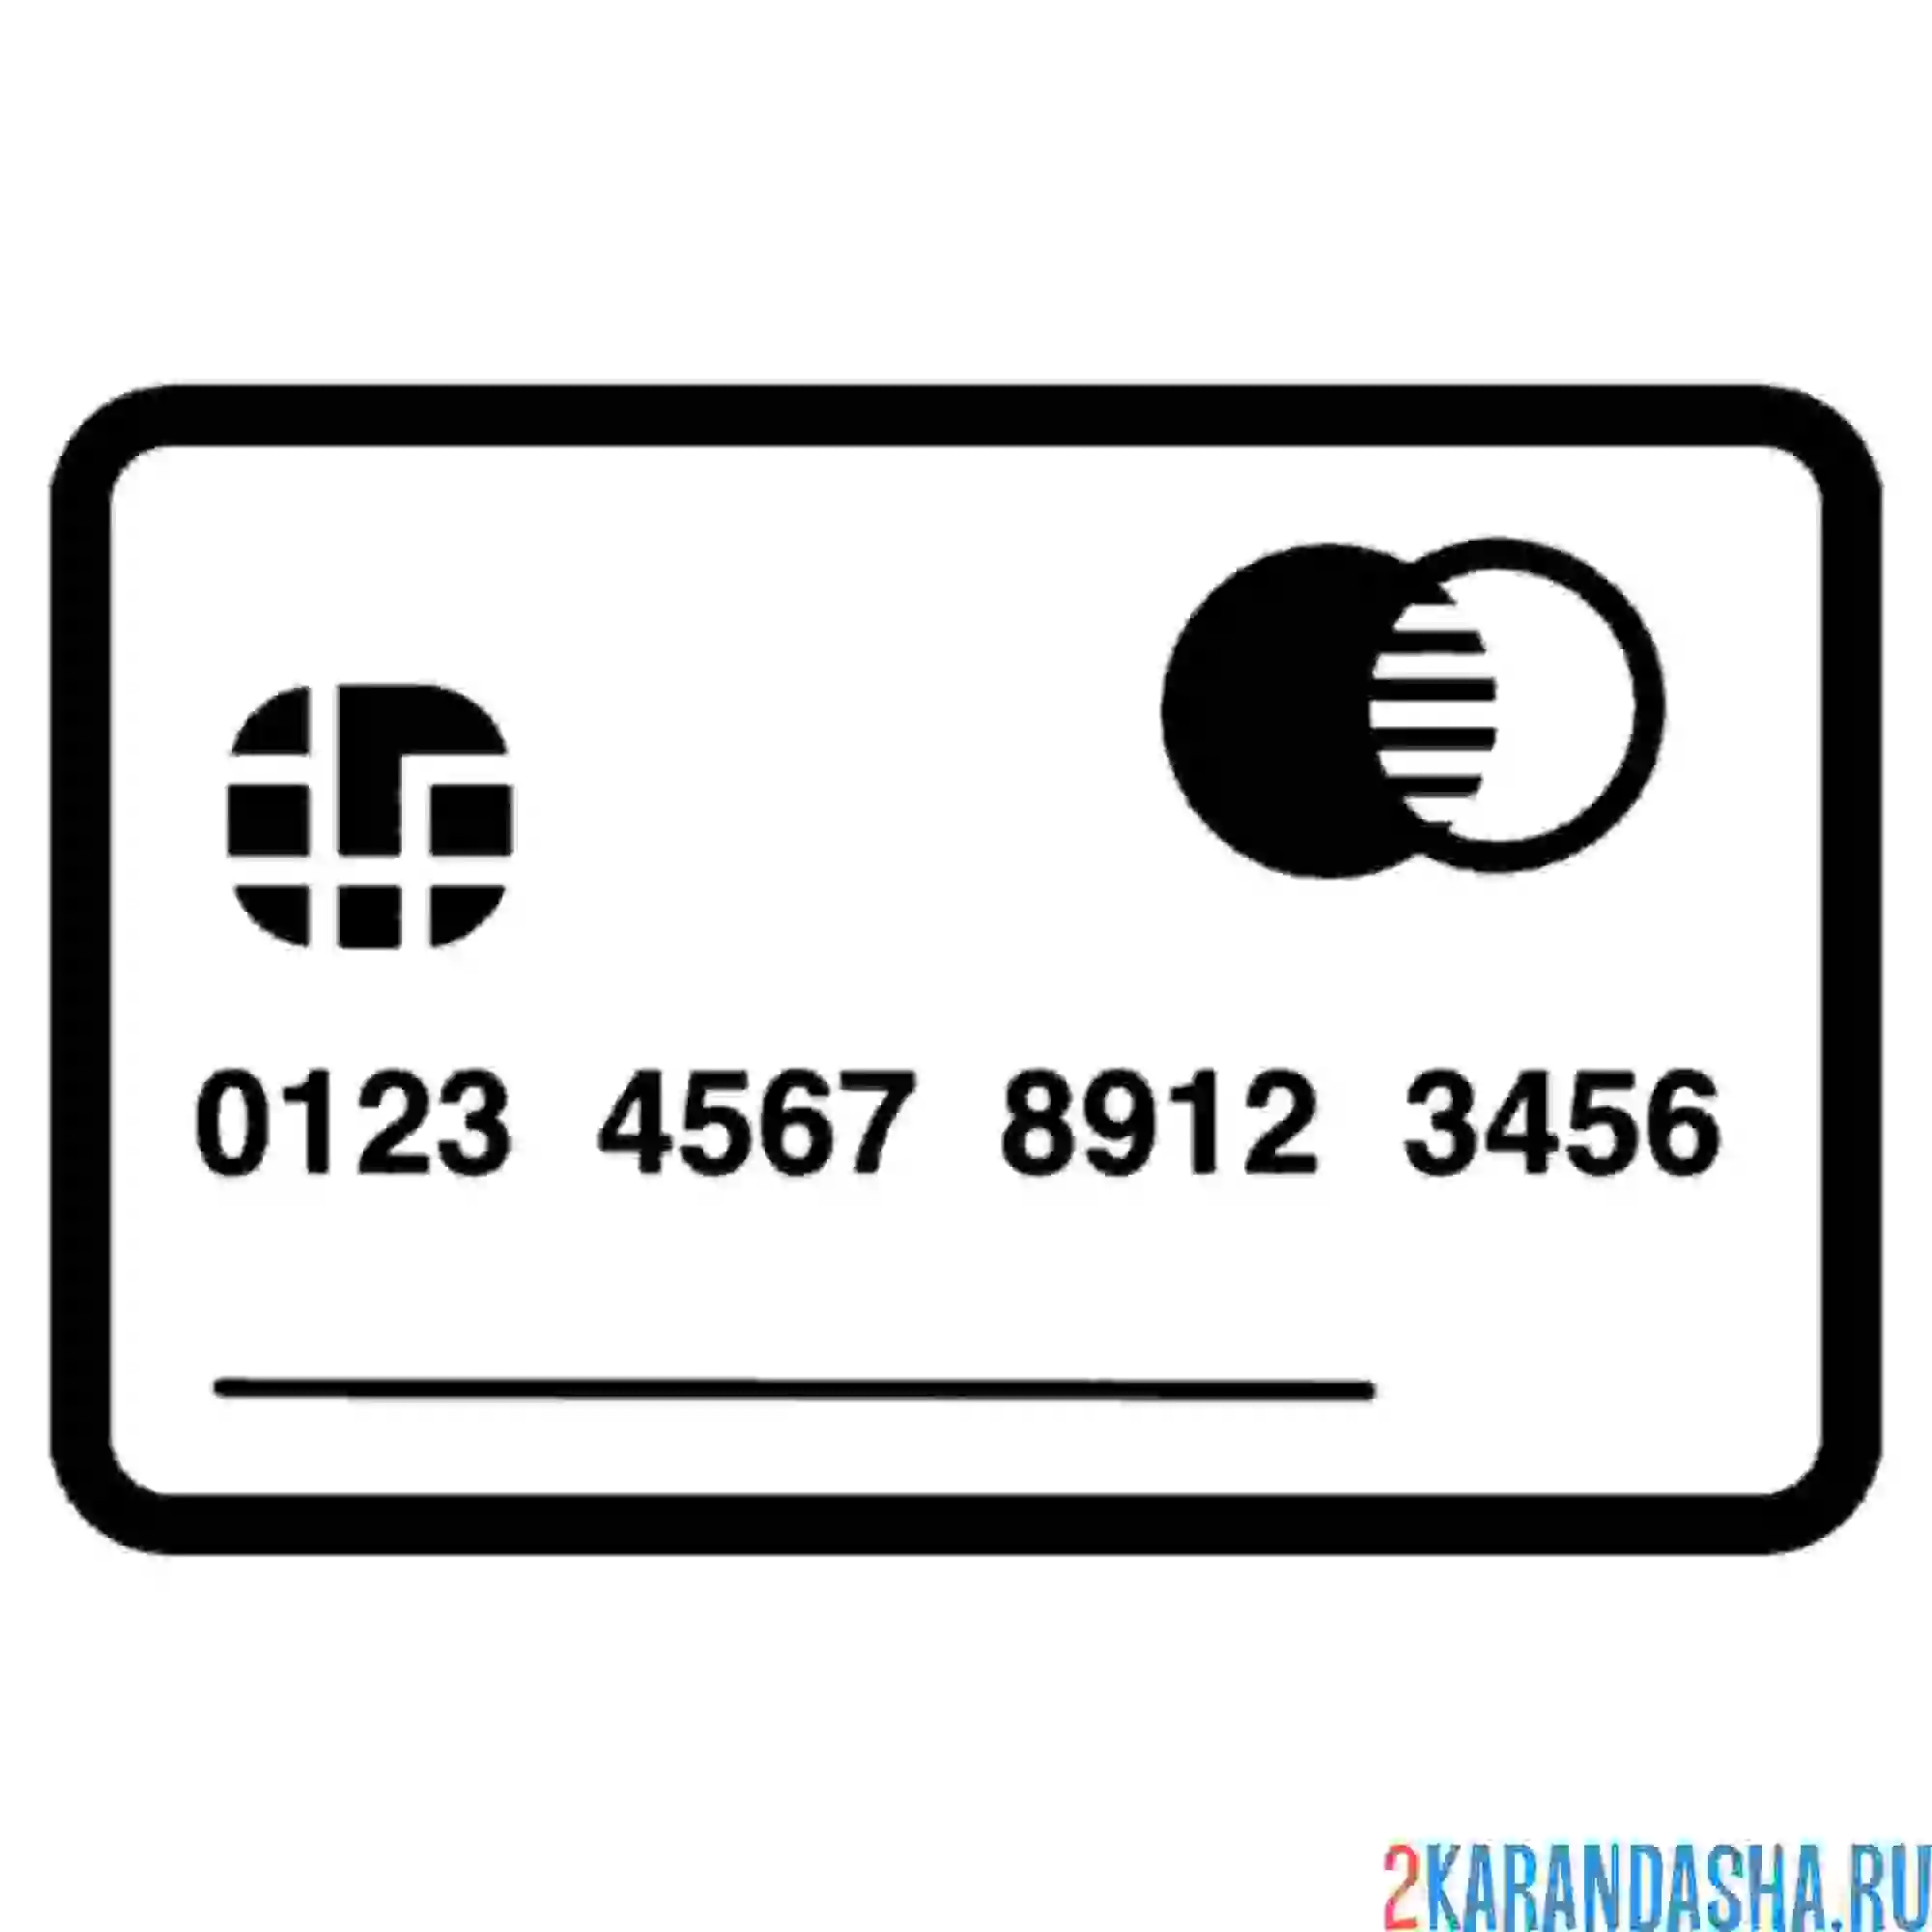 Раскраска дебетовая кредитная карточка